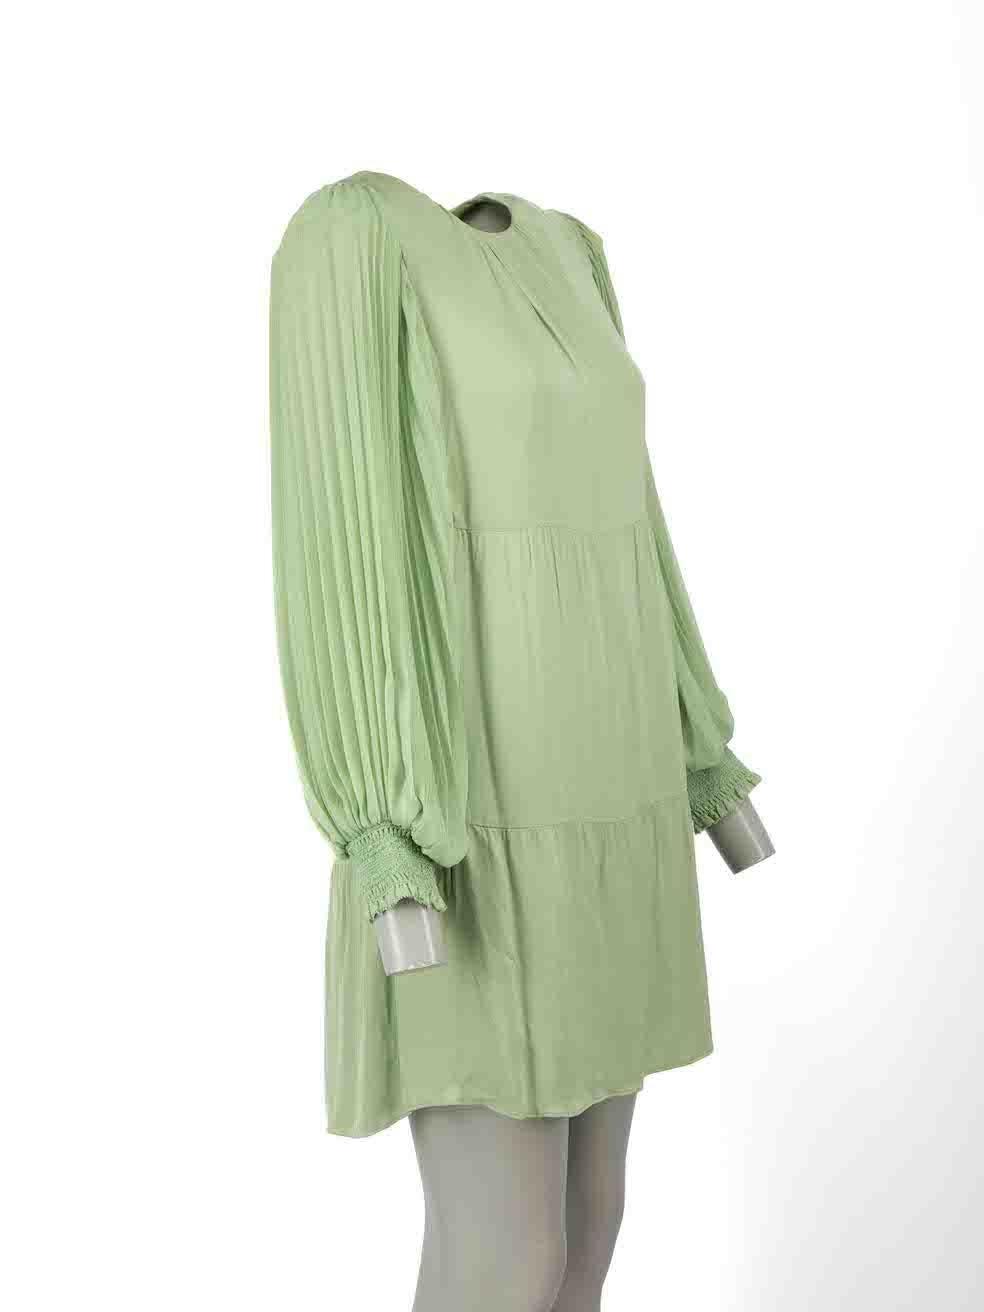 CONDITION ist nie getragen, mit Tags. Keine sichtbaren Abnutzungserscheinungen am Kleid sind bei diesem neuen Alice + Olivia Designer-Wiederverkaufsartikel erkennbar.
 
Einzelheiten
Grün
Viskose
Kleid
Lange